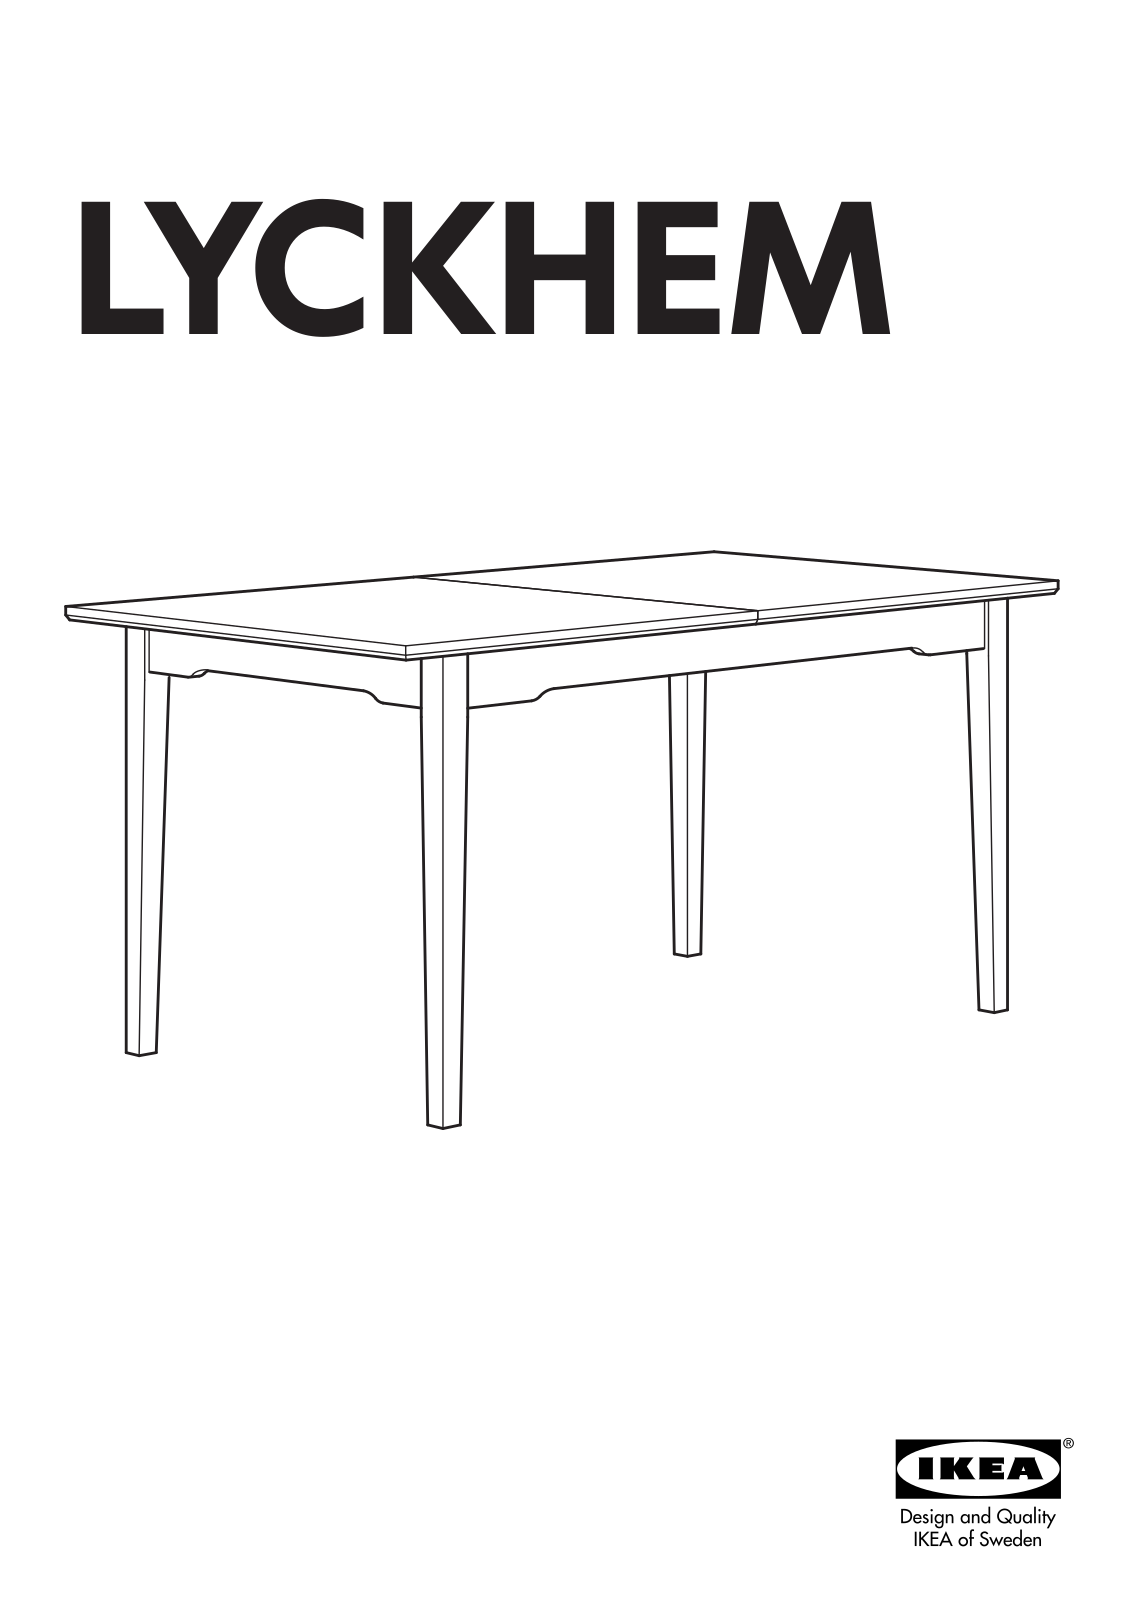 IKEA LYCKHEM User Manual